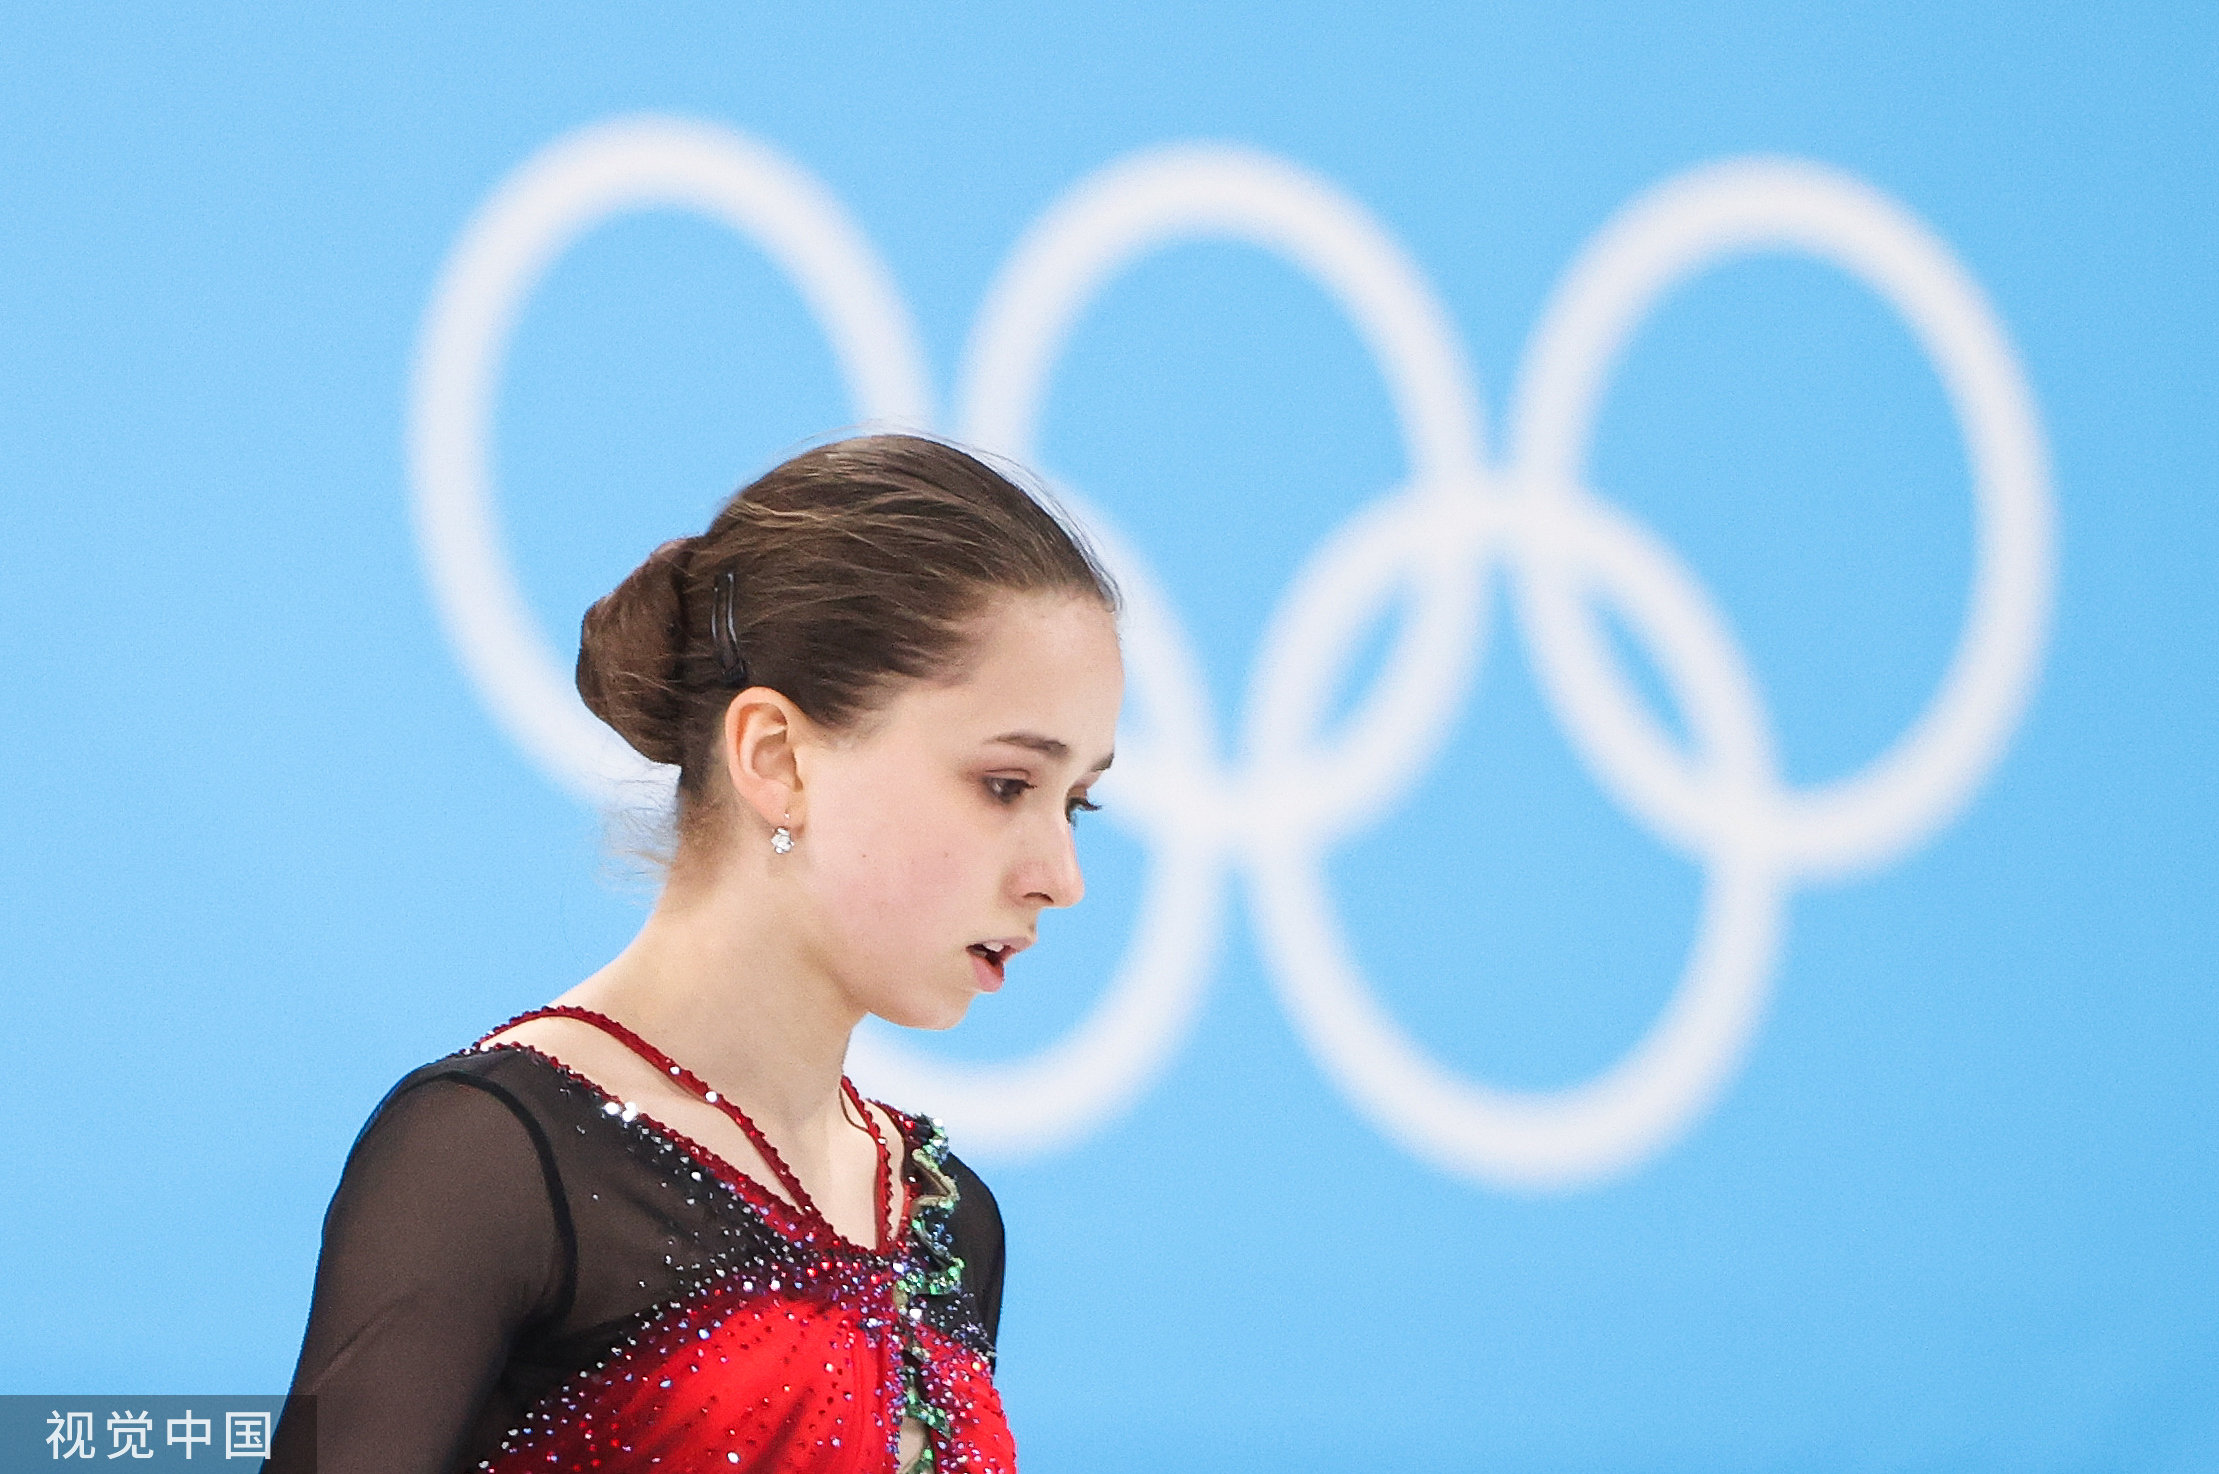 瓦利耶娃在北京冬奥会赛场。